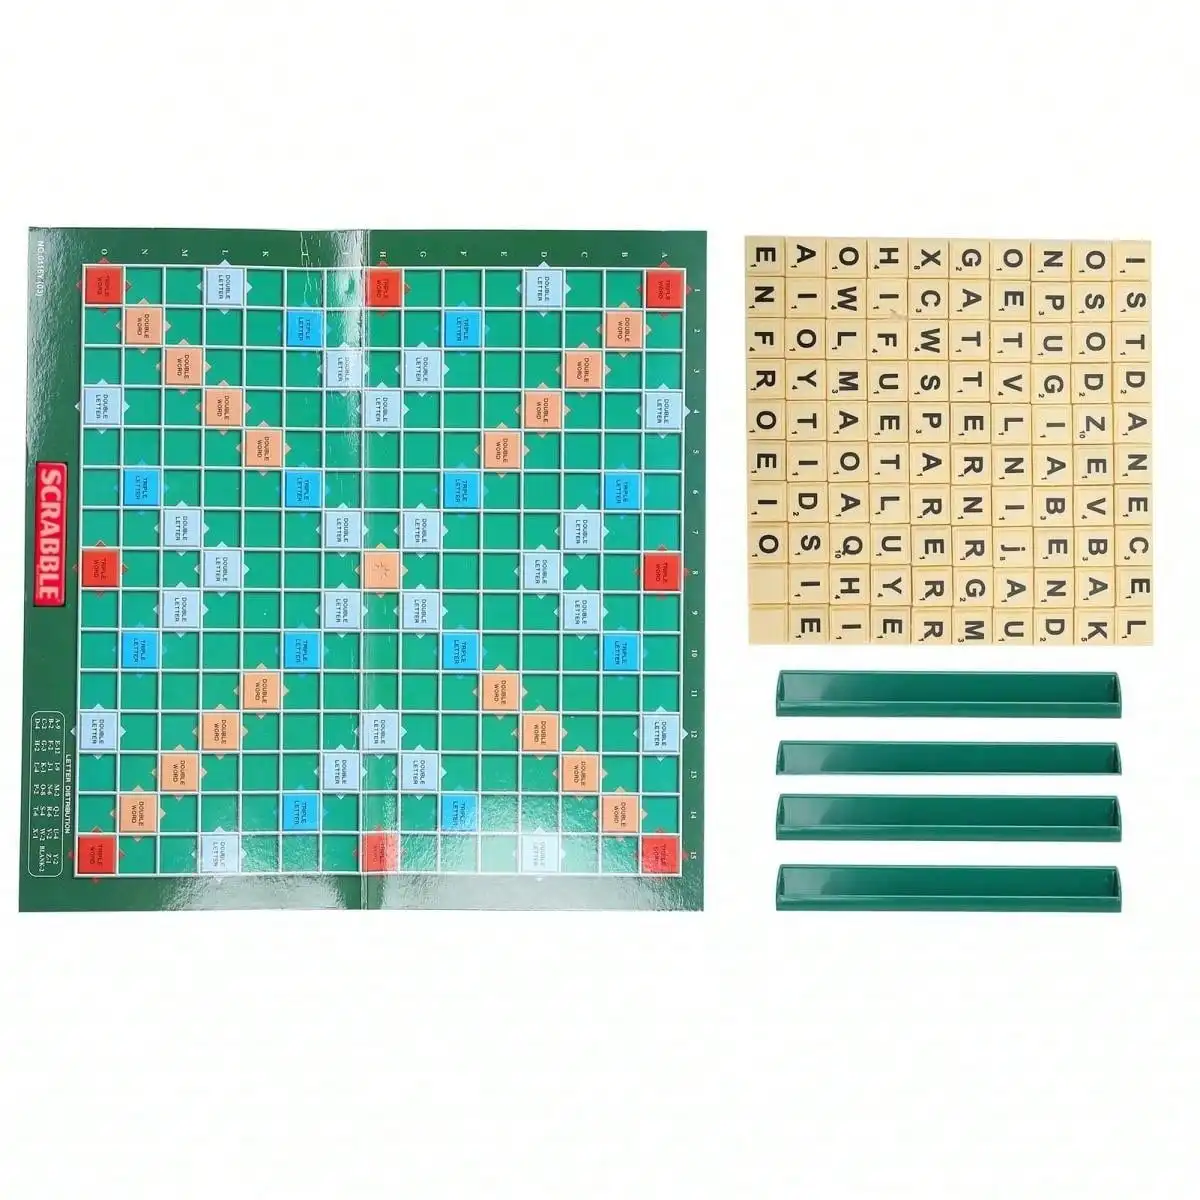 1 pz, solitario Scrabble inglese, scacchi alfabeto, Scrabble alfabeto, gioco da tavolo Jigsaw per 2-4 giocatori, gioco da tavolo.